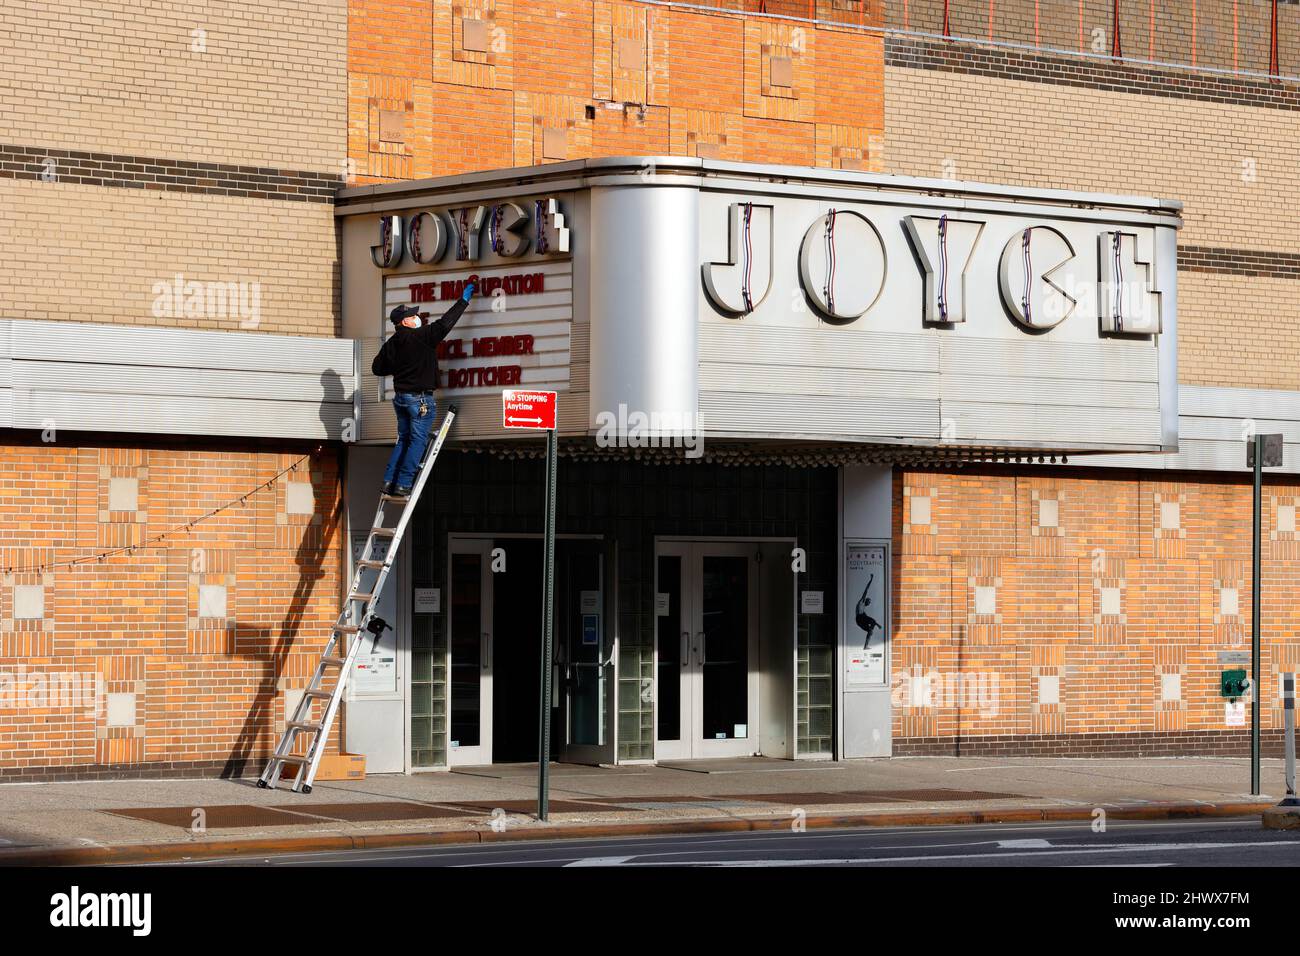 Eine Person ändert die Buchstaben auf dem Festzelt des Joyce Theatre, 175 8. Ave, New York, NY. Stockfoto